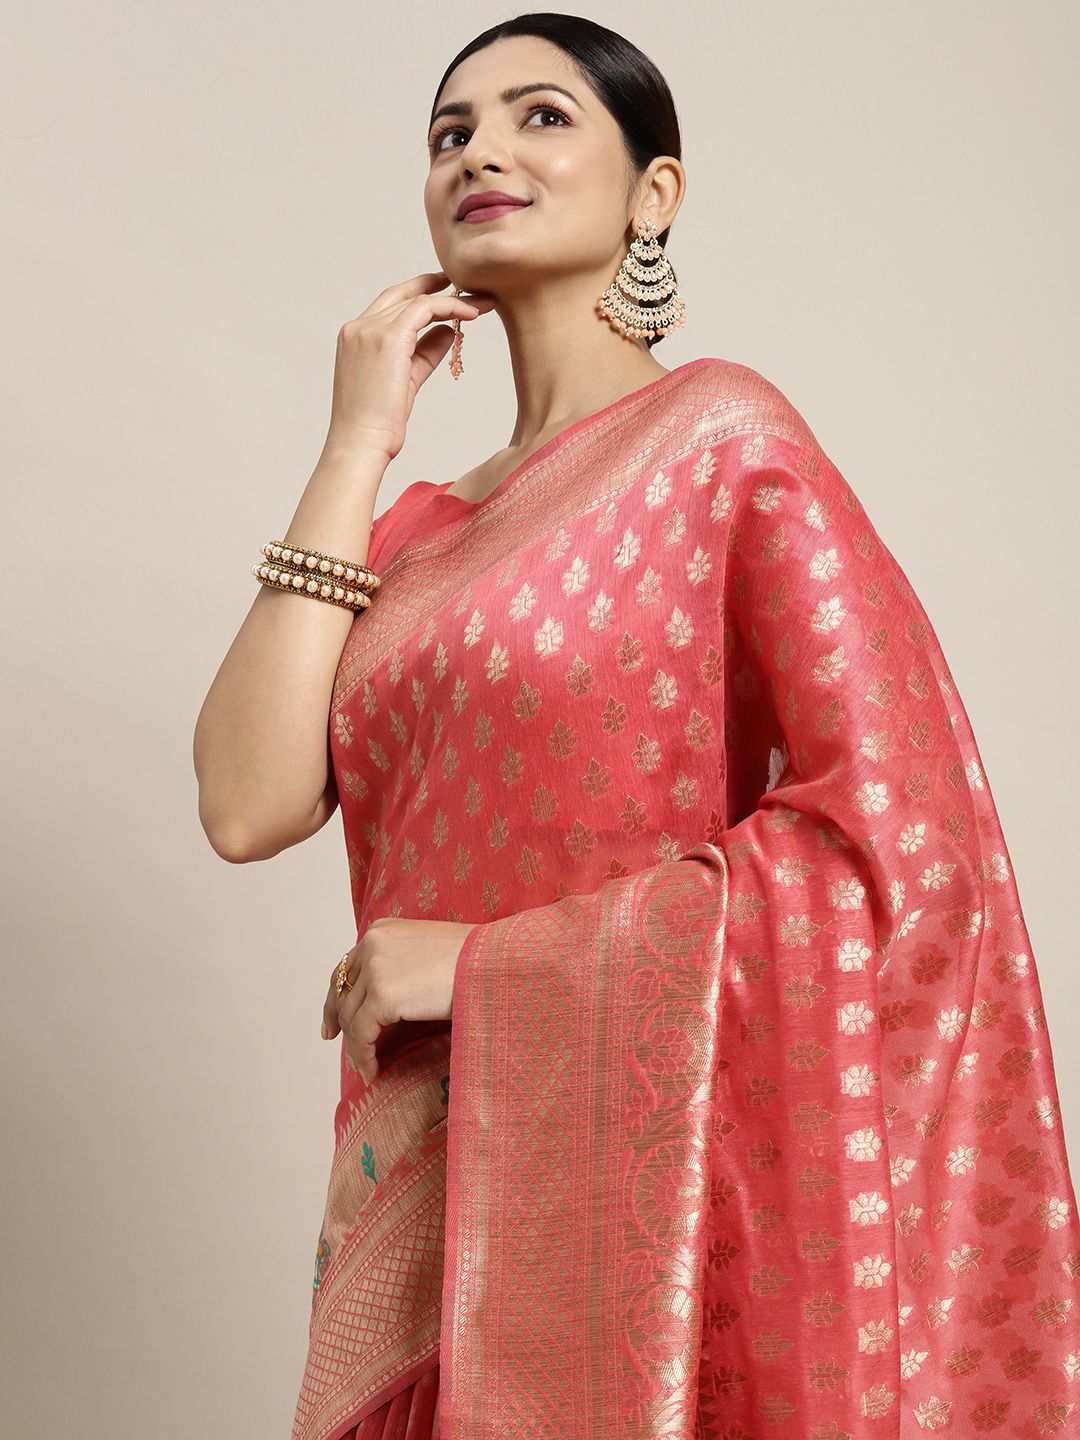 Saree mall Pink & Golden Silk Cotton Woven Design Banarasi Saree Price in India